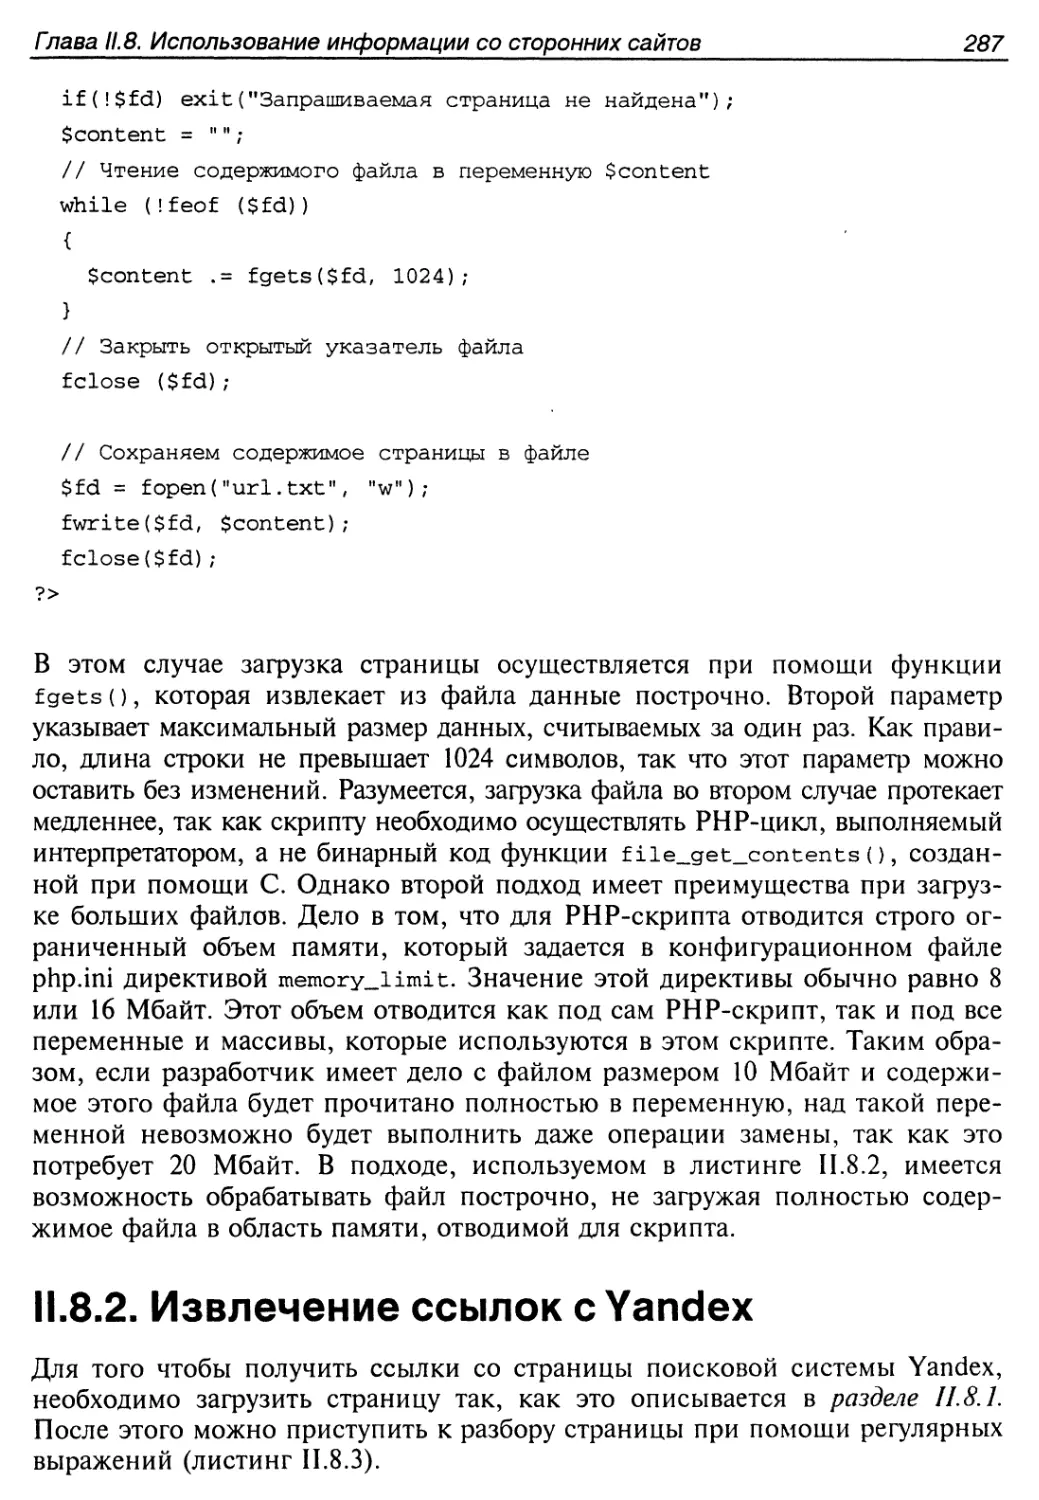 II.8.2. Извлечение ссылок с Yandex